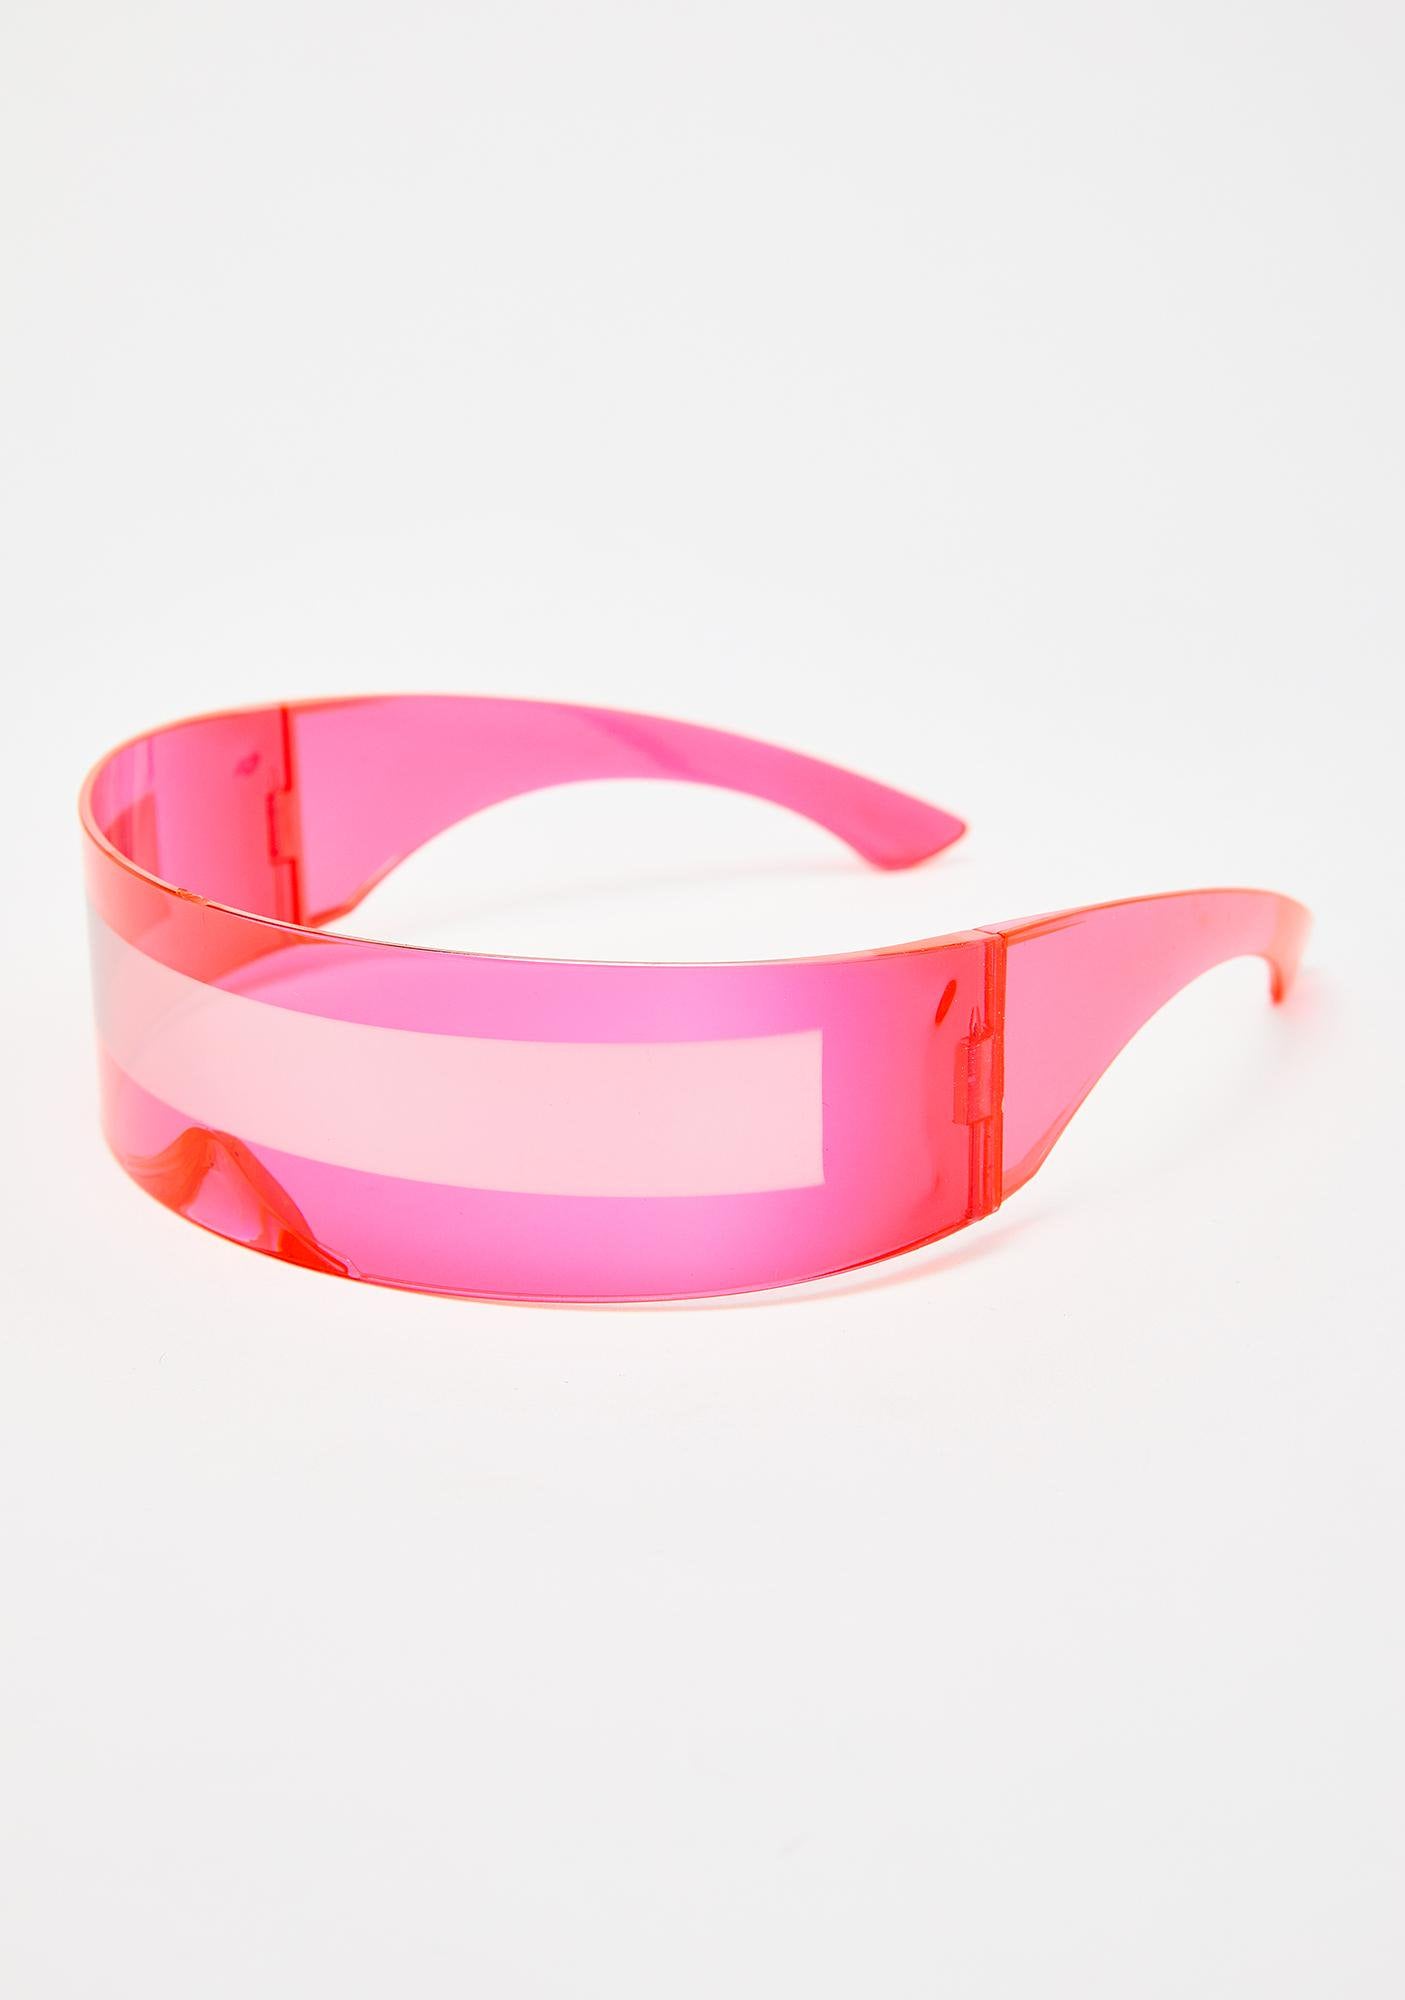 TEEK - Future Wrapped Sunglasses EYEGLASSES theteekdotcom 4  